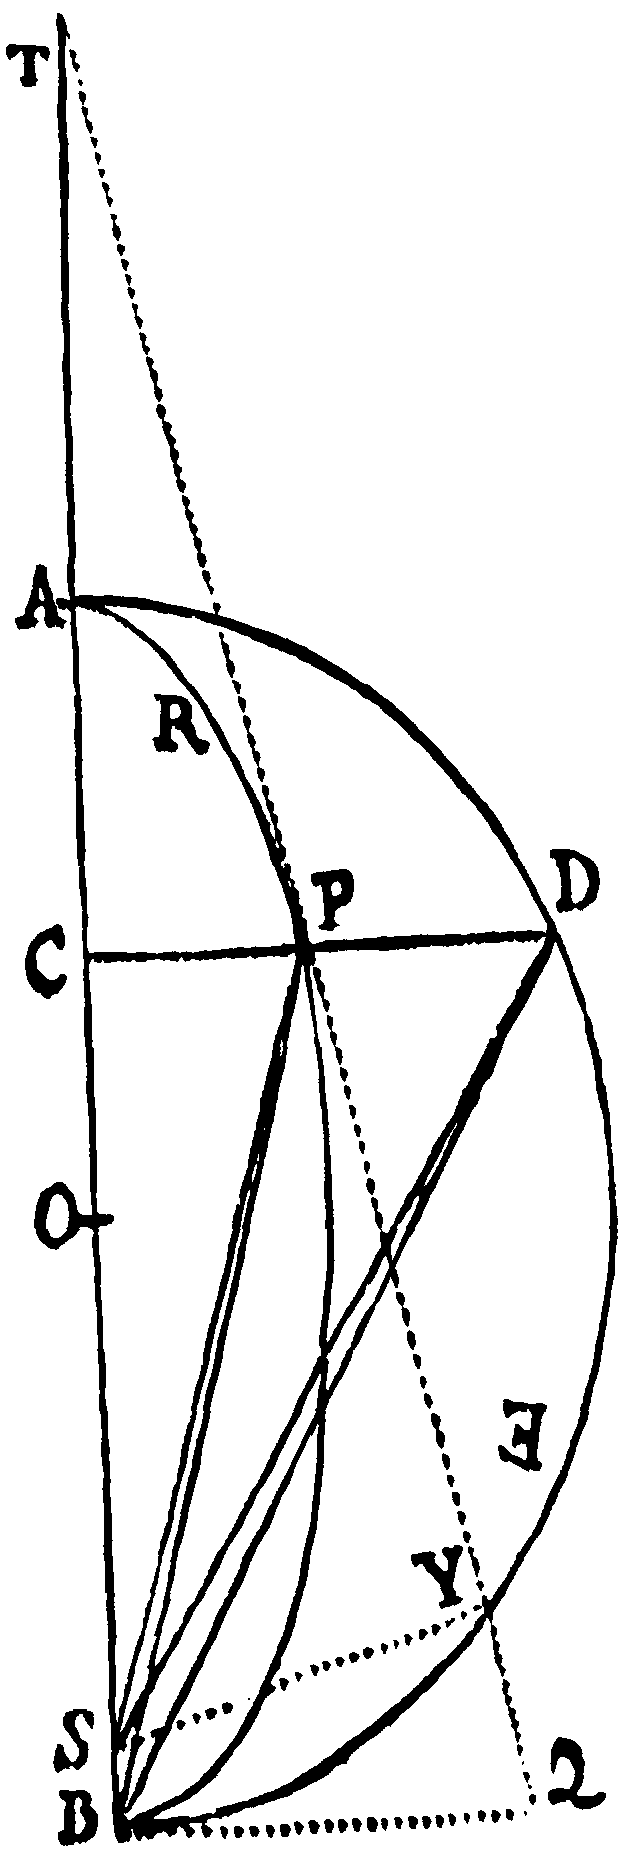 Figure for Prop. XXXIII.